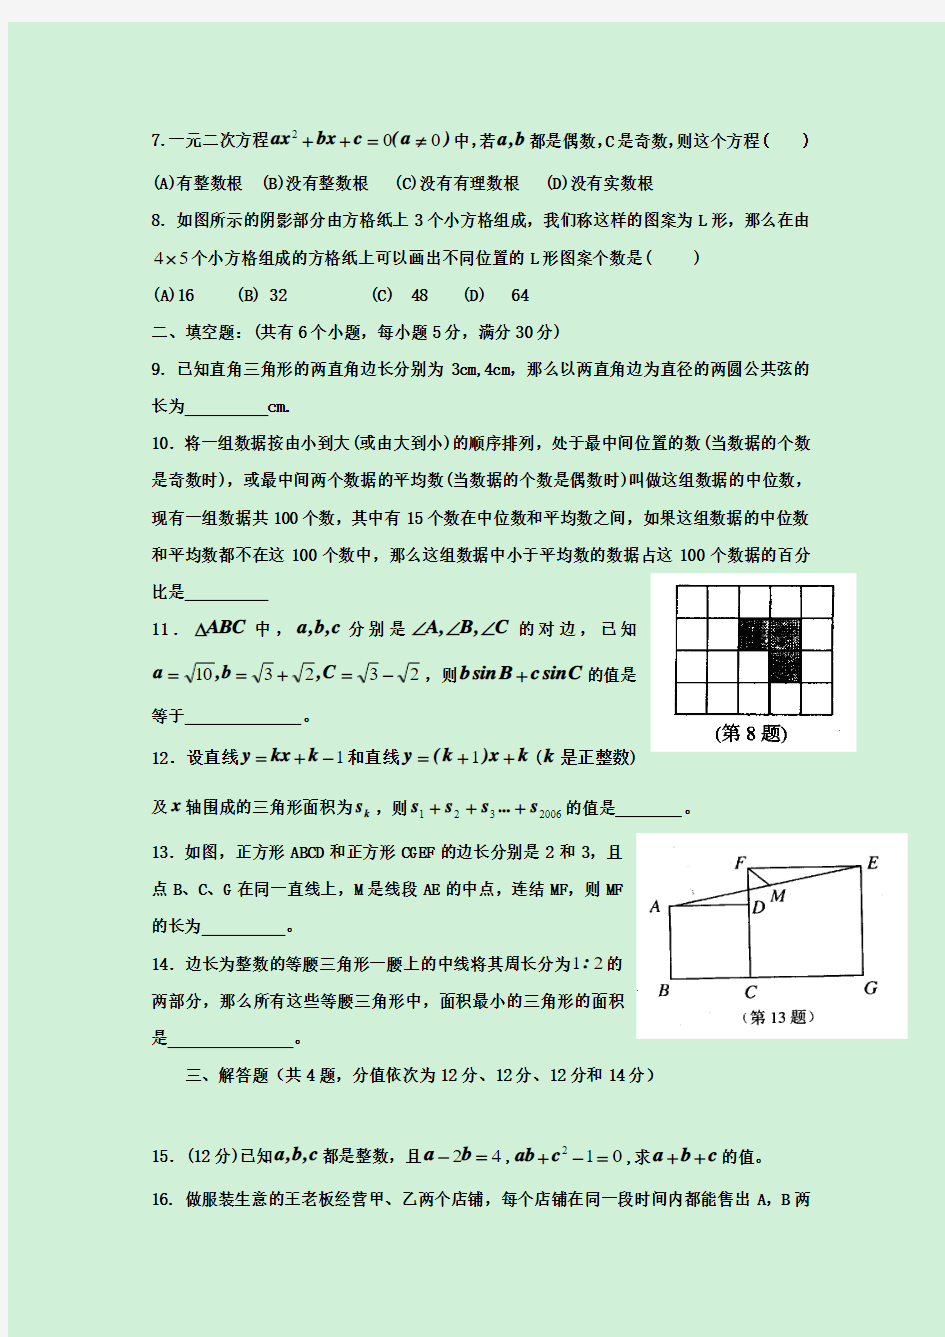 2019-2020年初中数学竞赛初赛试题(一,含详解)